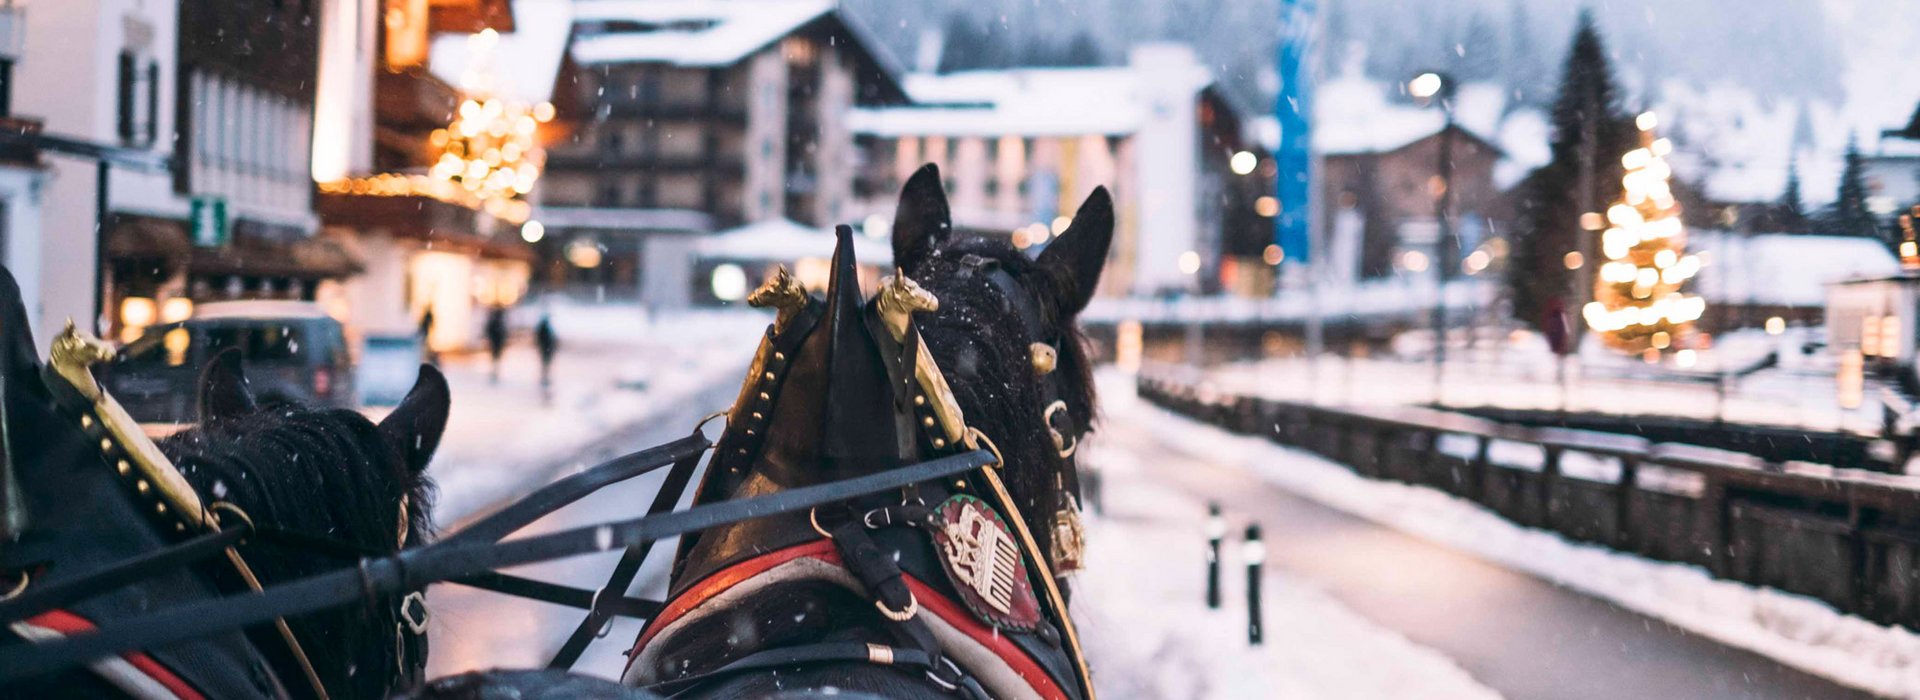 Pferdeschlittenfahrt im Winter